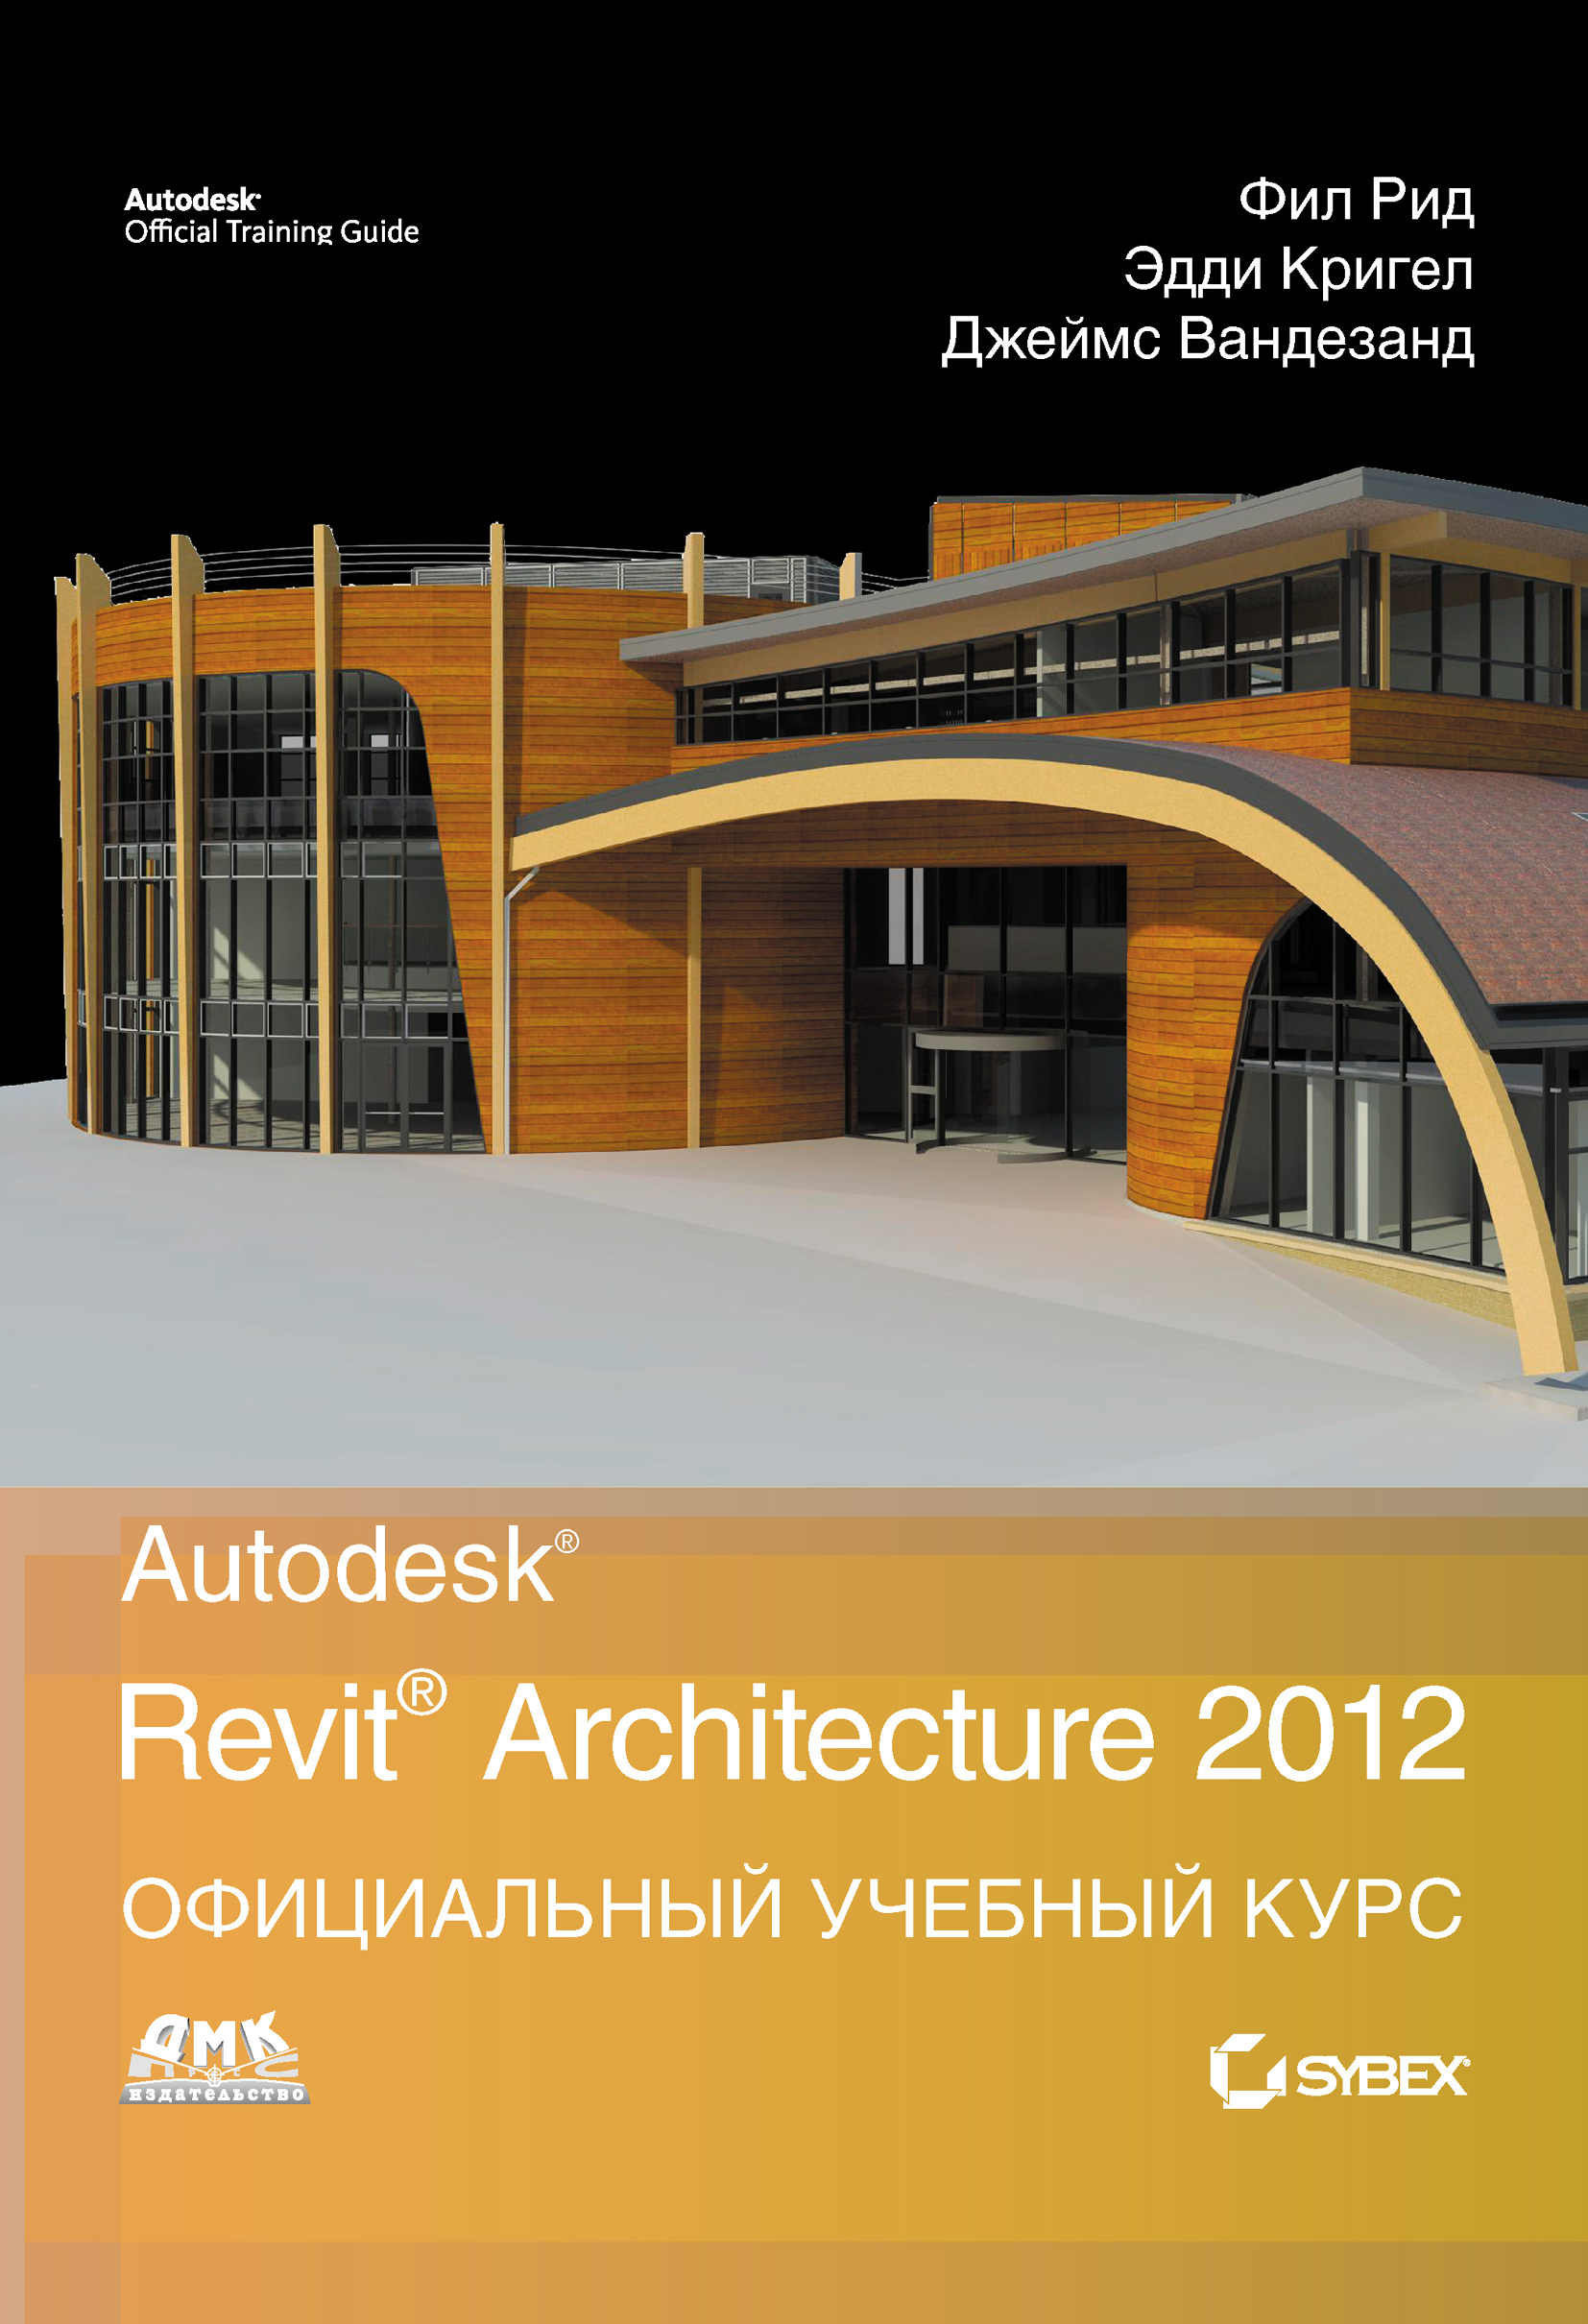 Autodesk Revit Architecture 2012.Официальный учебный курс